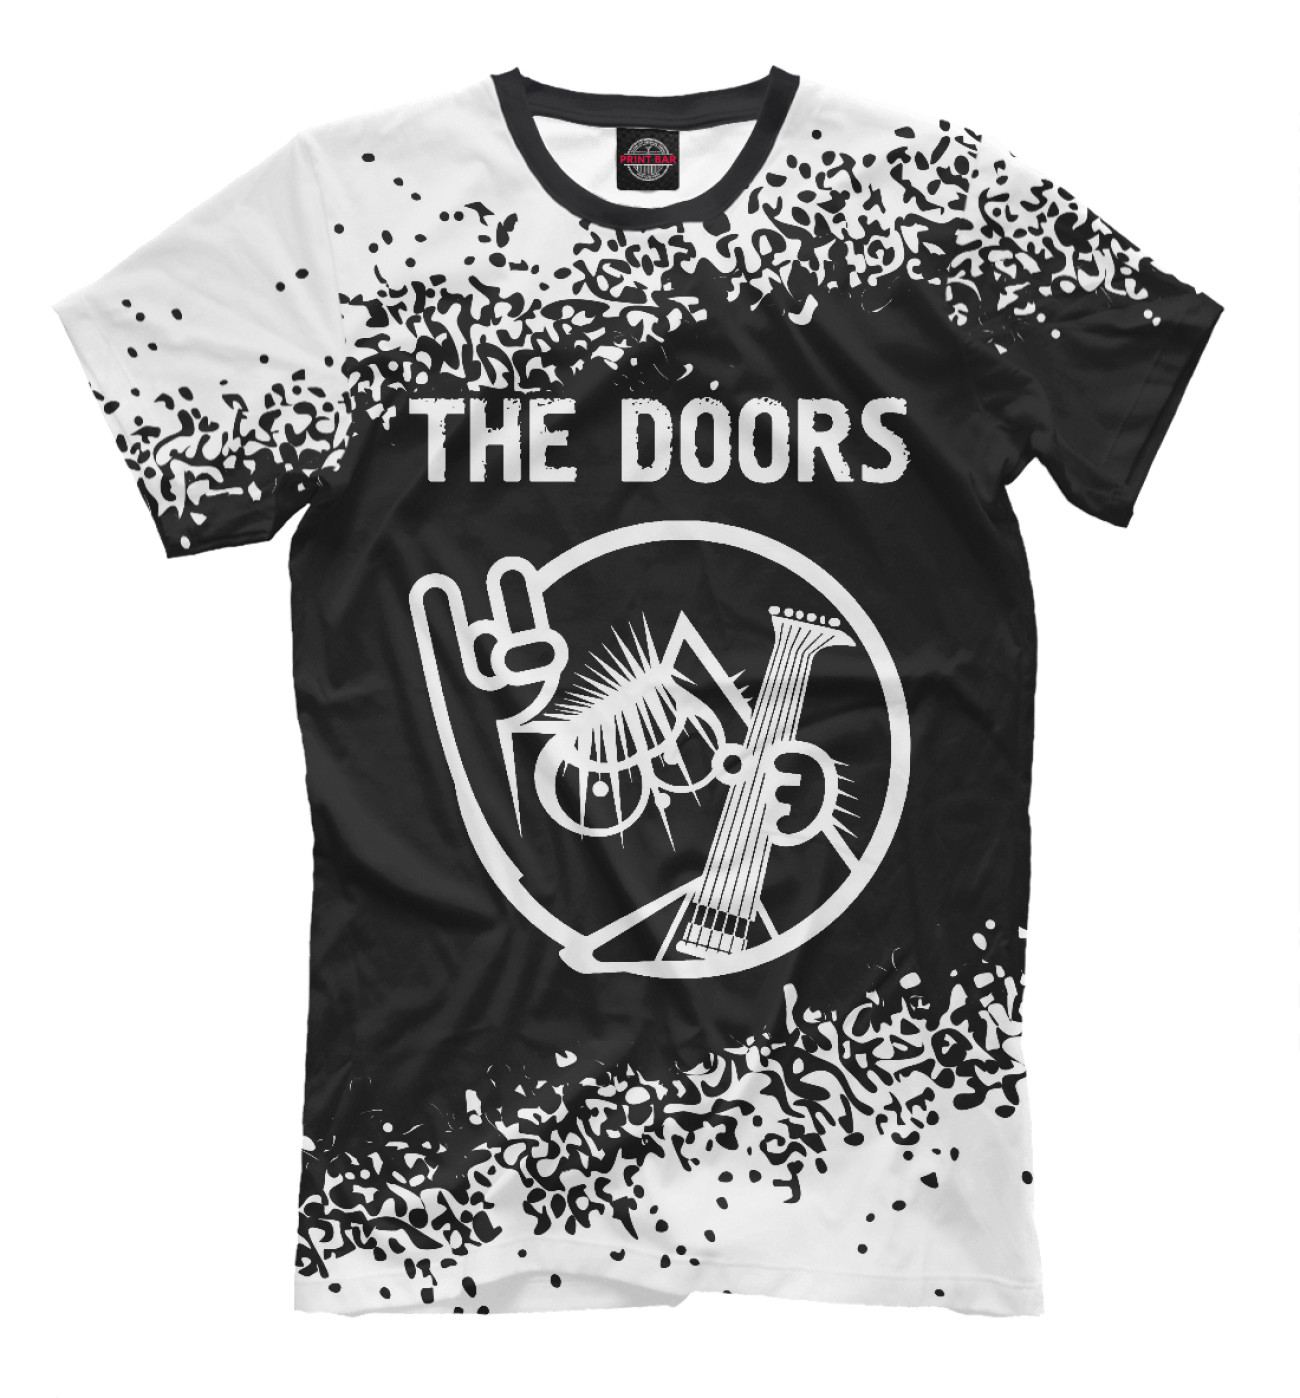 Мужская Футболка The Doors - Кот, артикул: DRS-648607-fut-2